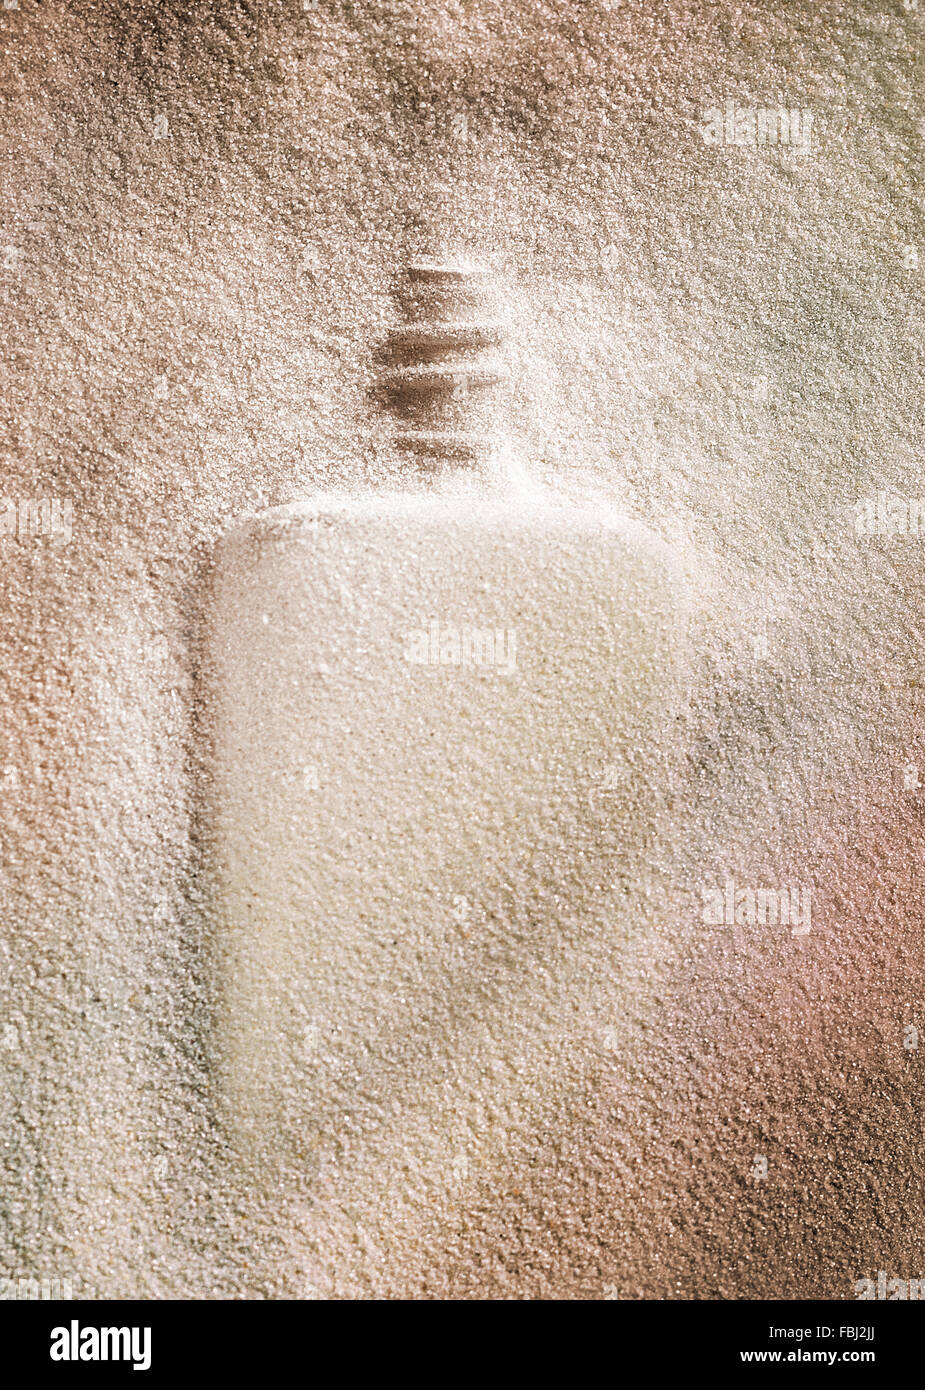 Silueta de la botella en una arena raw material de vidrio Foto de stock